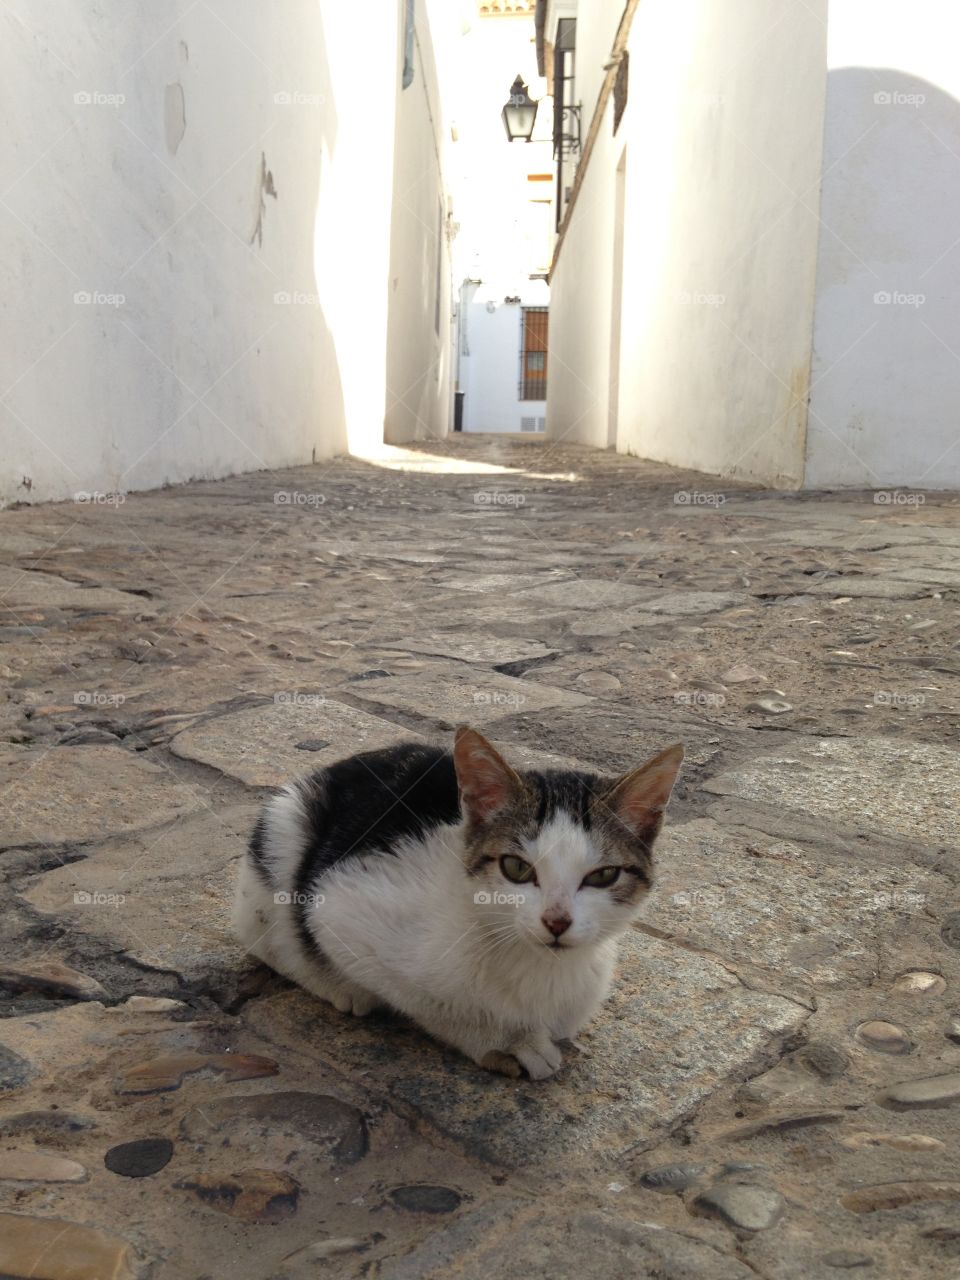 kitten on the street